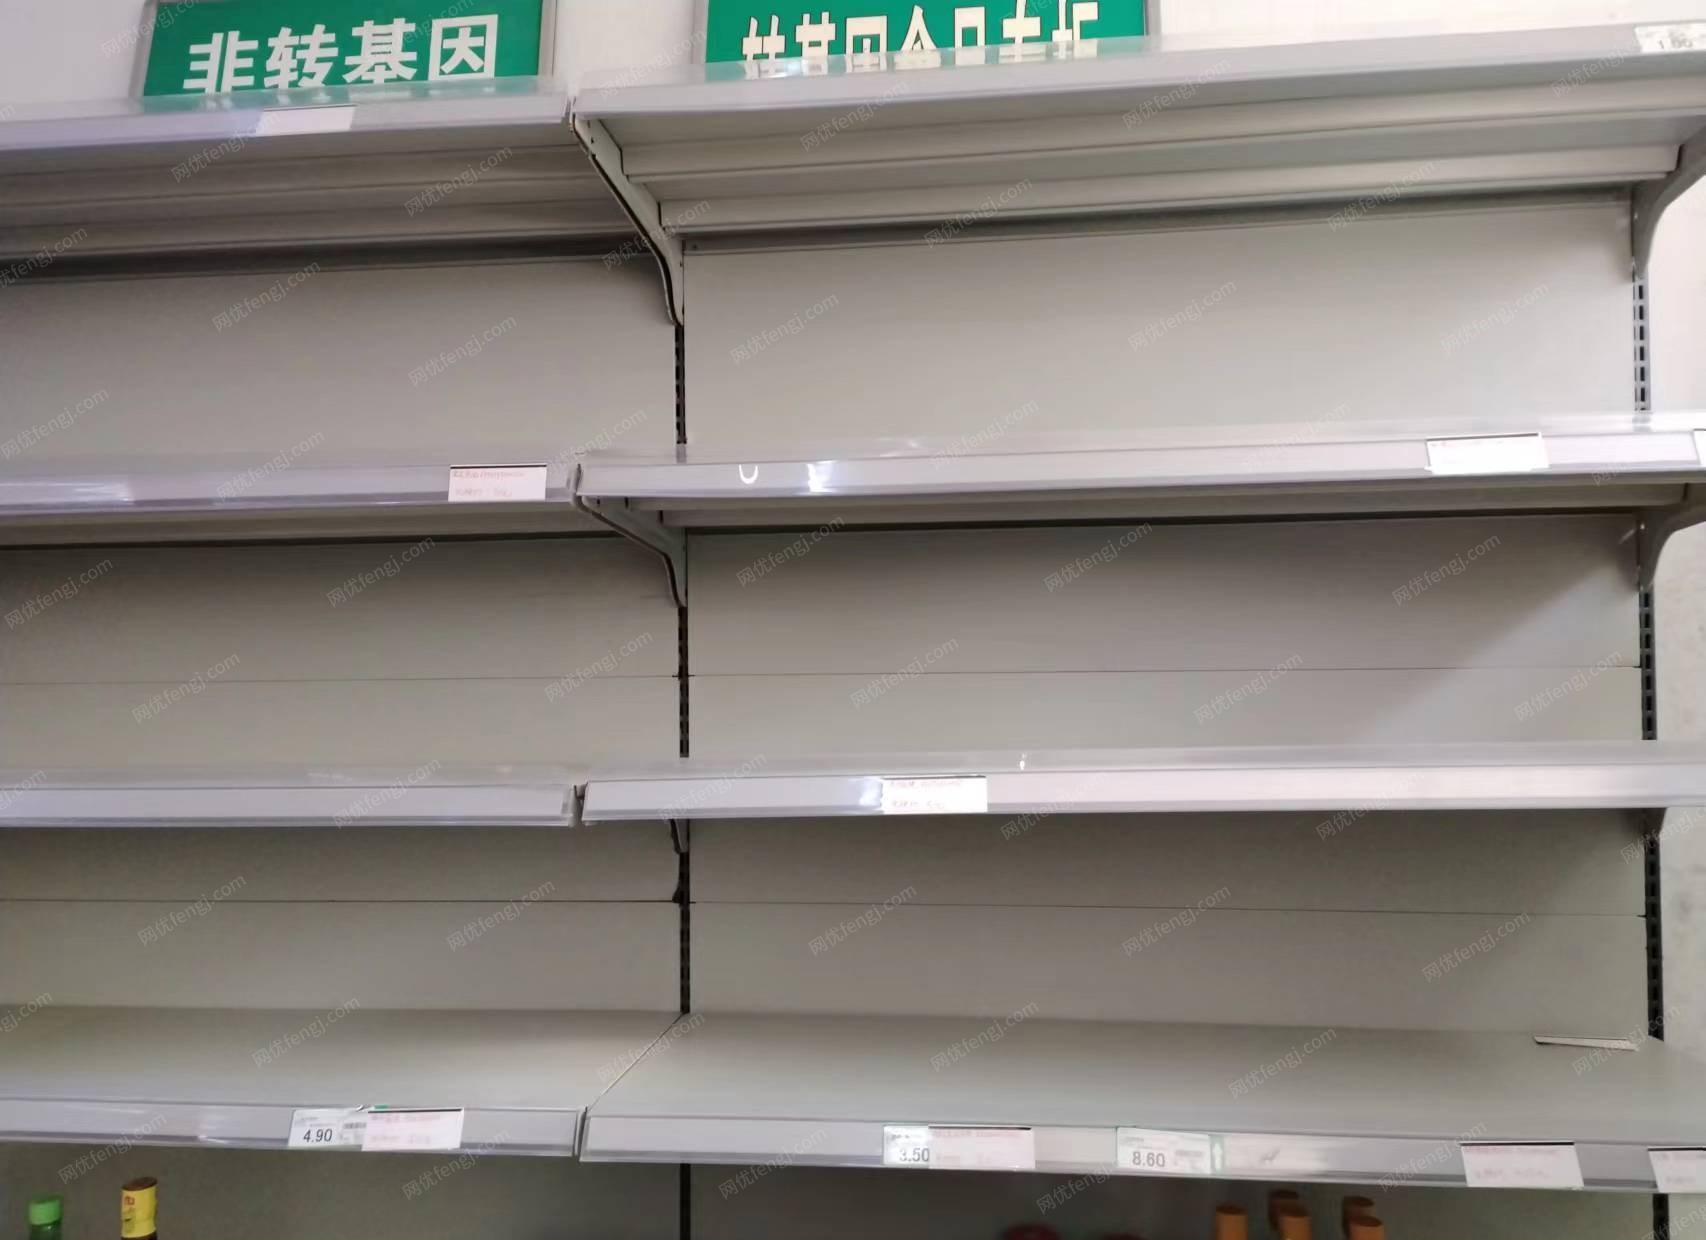 甘肃庆阳大型超市全套设备出售